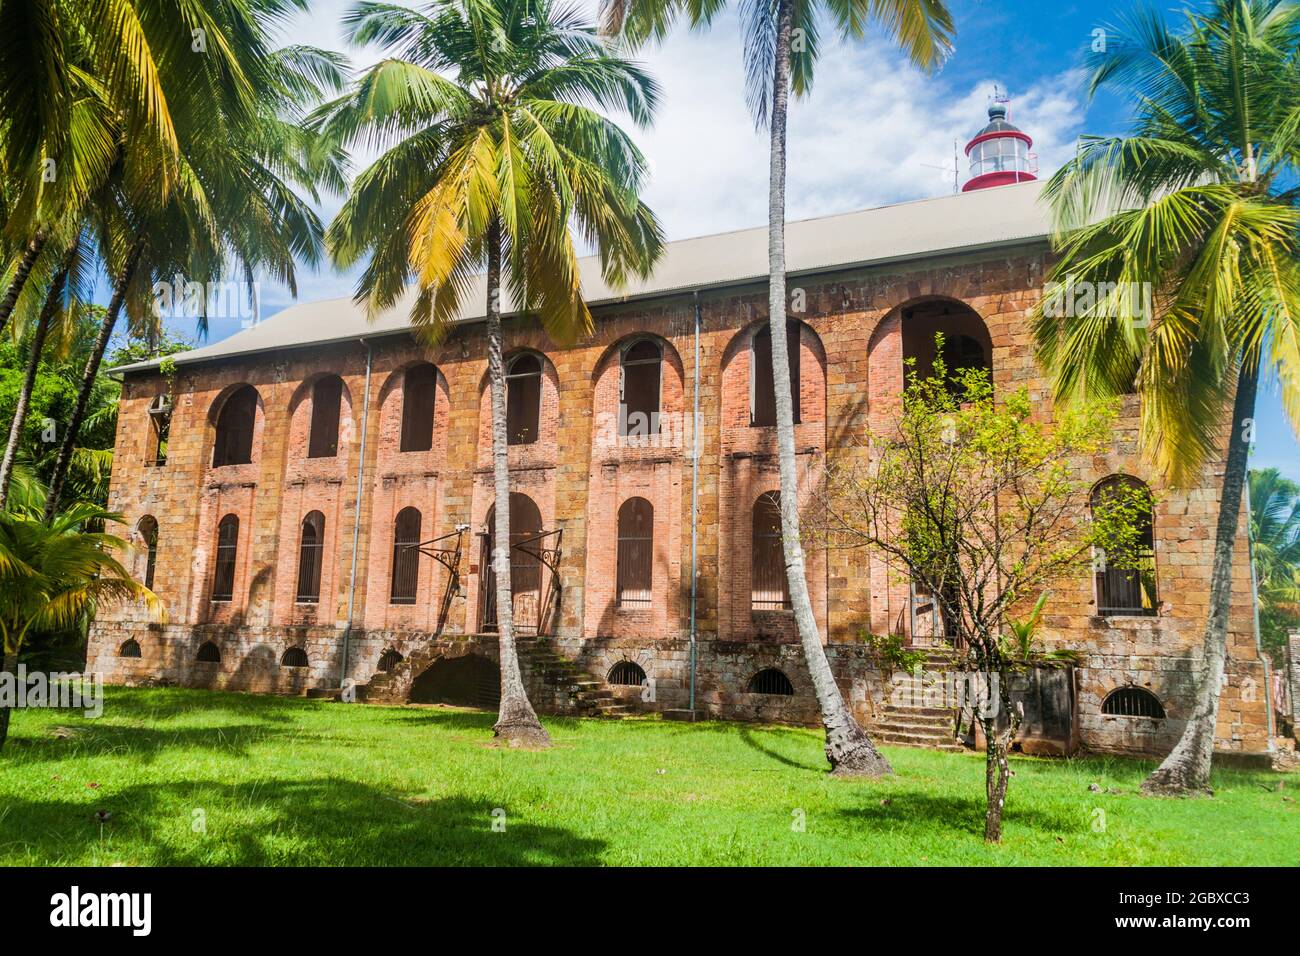 Ex colonia penale a Ile Royale, una delle isole di Iles du Salut (Isole della salvezza) nella Guyana francese Foto Stock